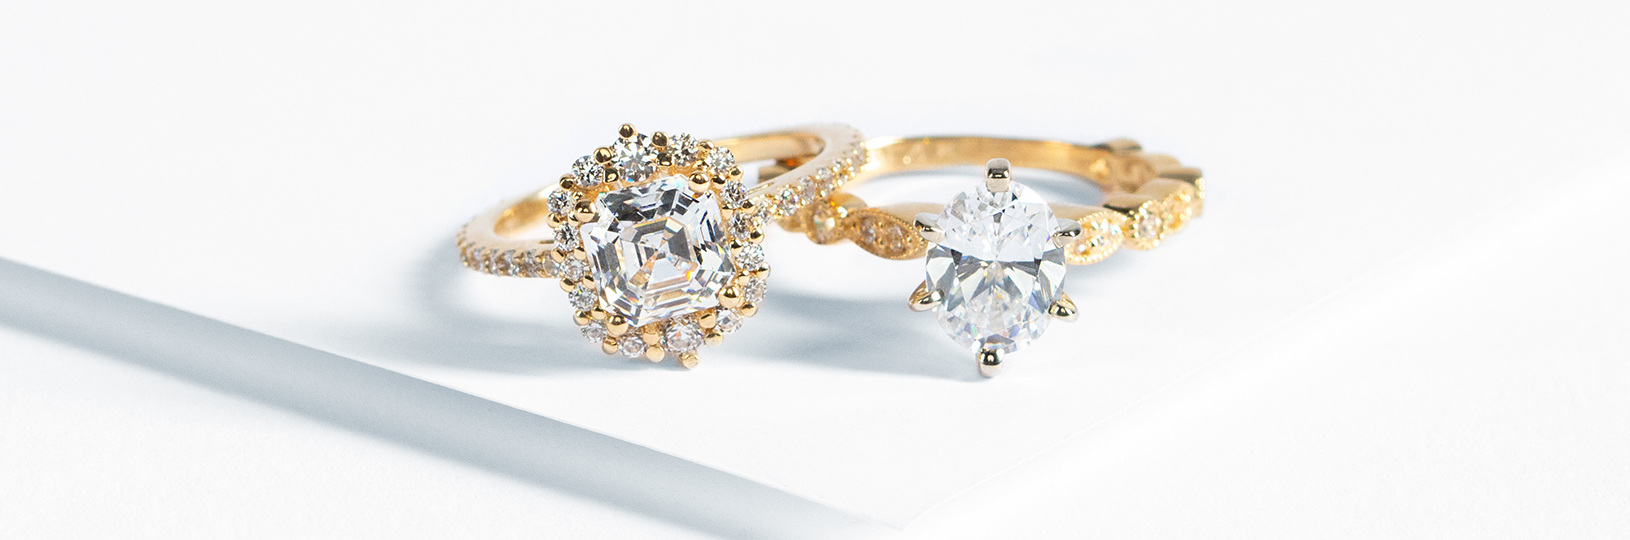 Diamond Engagement Rings | Bespoke Engagement Rings | Steven Stone Jewellers